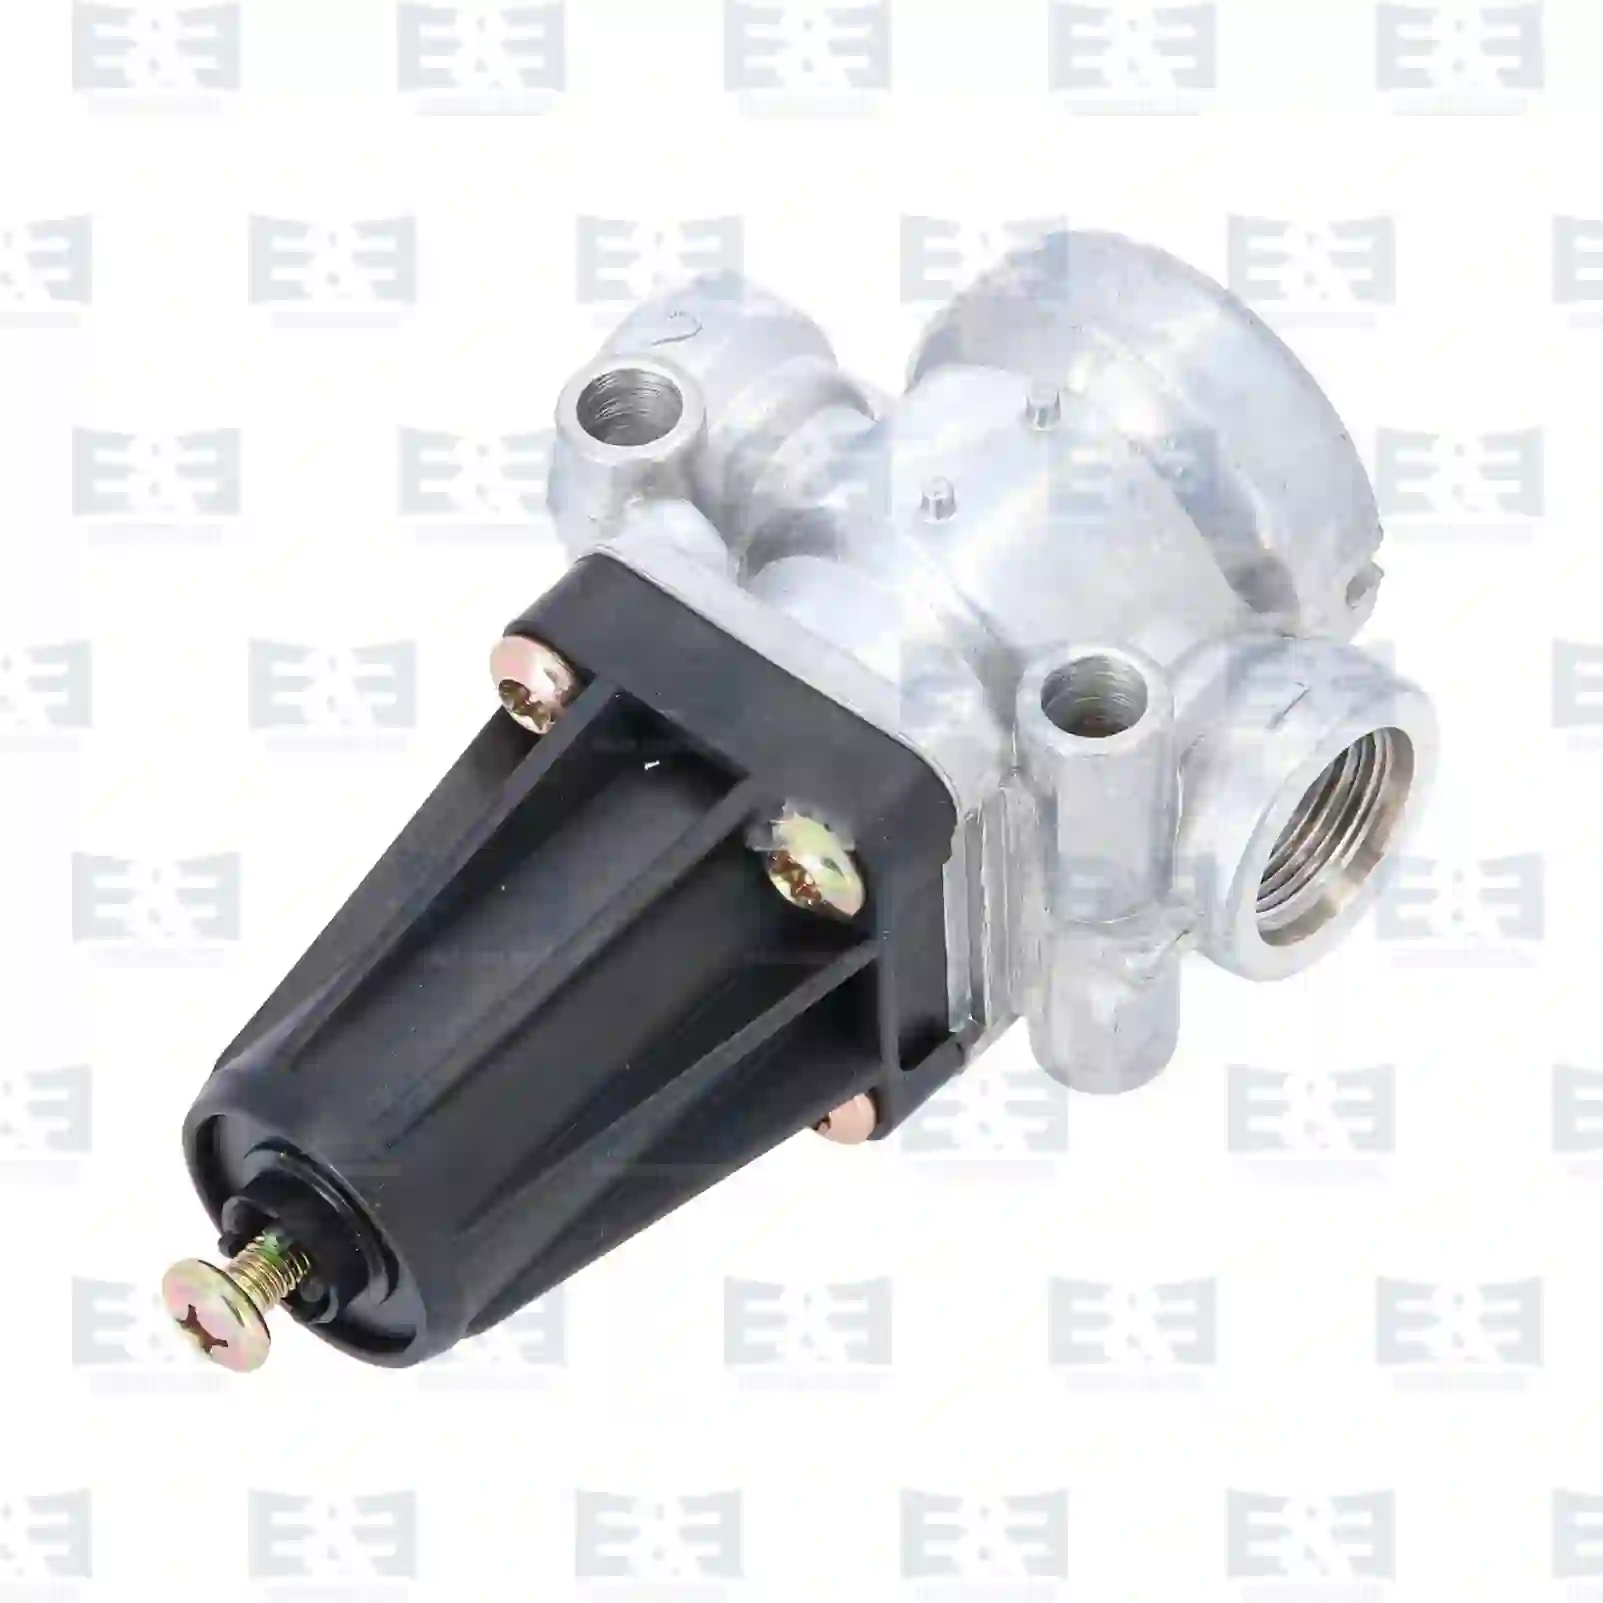  Pressure limiting valve || E&E Truck Spare Parts | Truck Spare Parts, Auotomotive Spare Parts